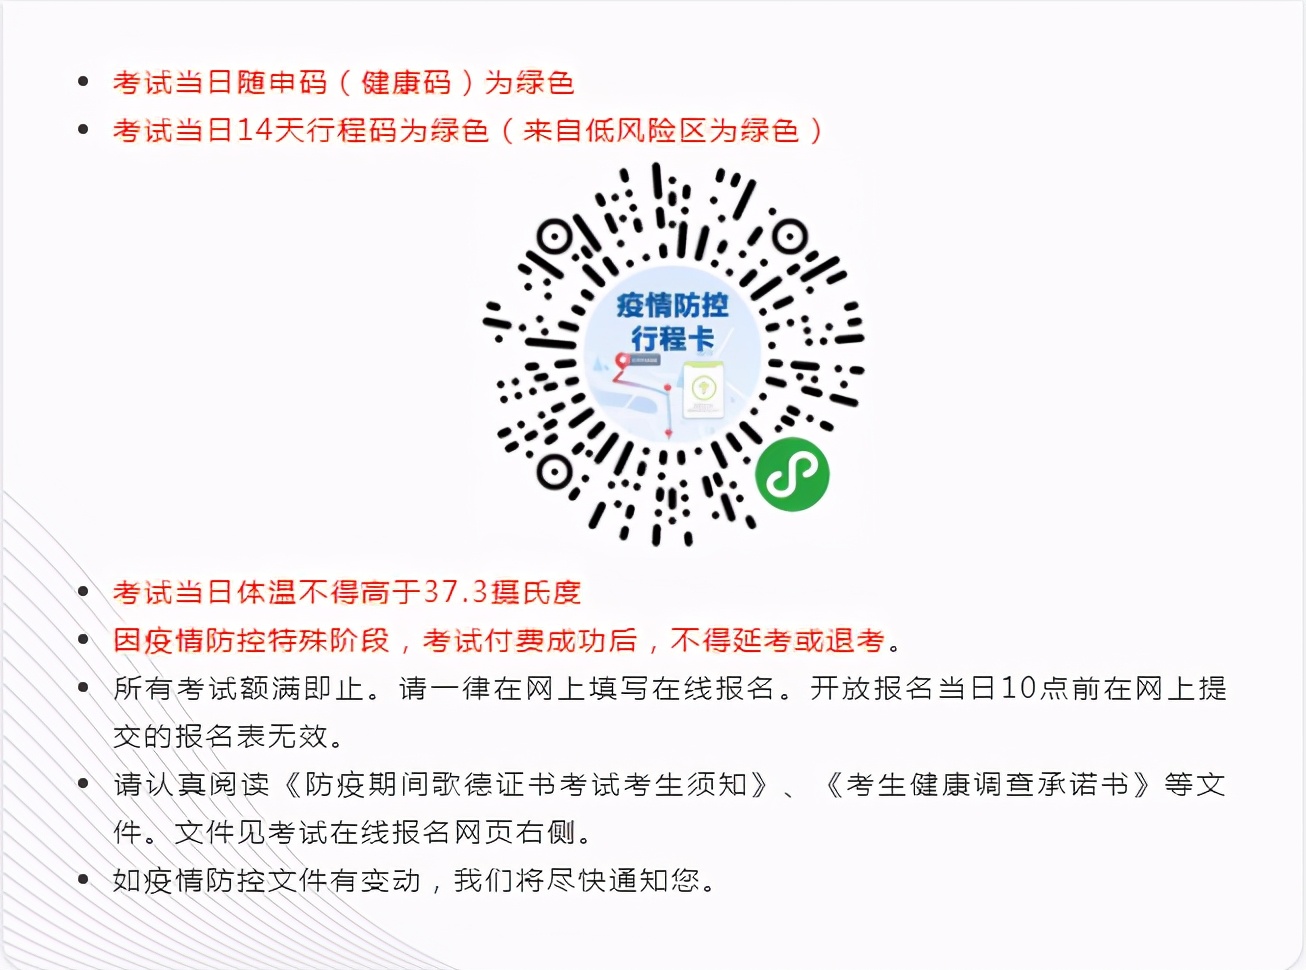 2021年1月~2月上海、南京西诺德语考试安排公布